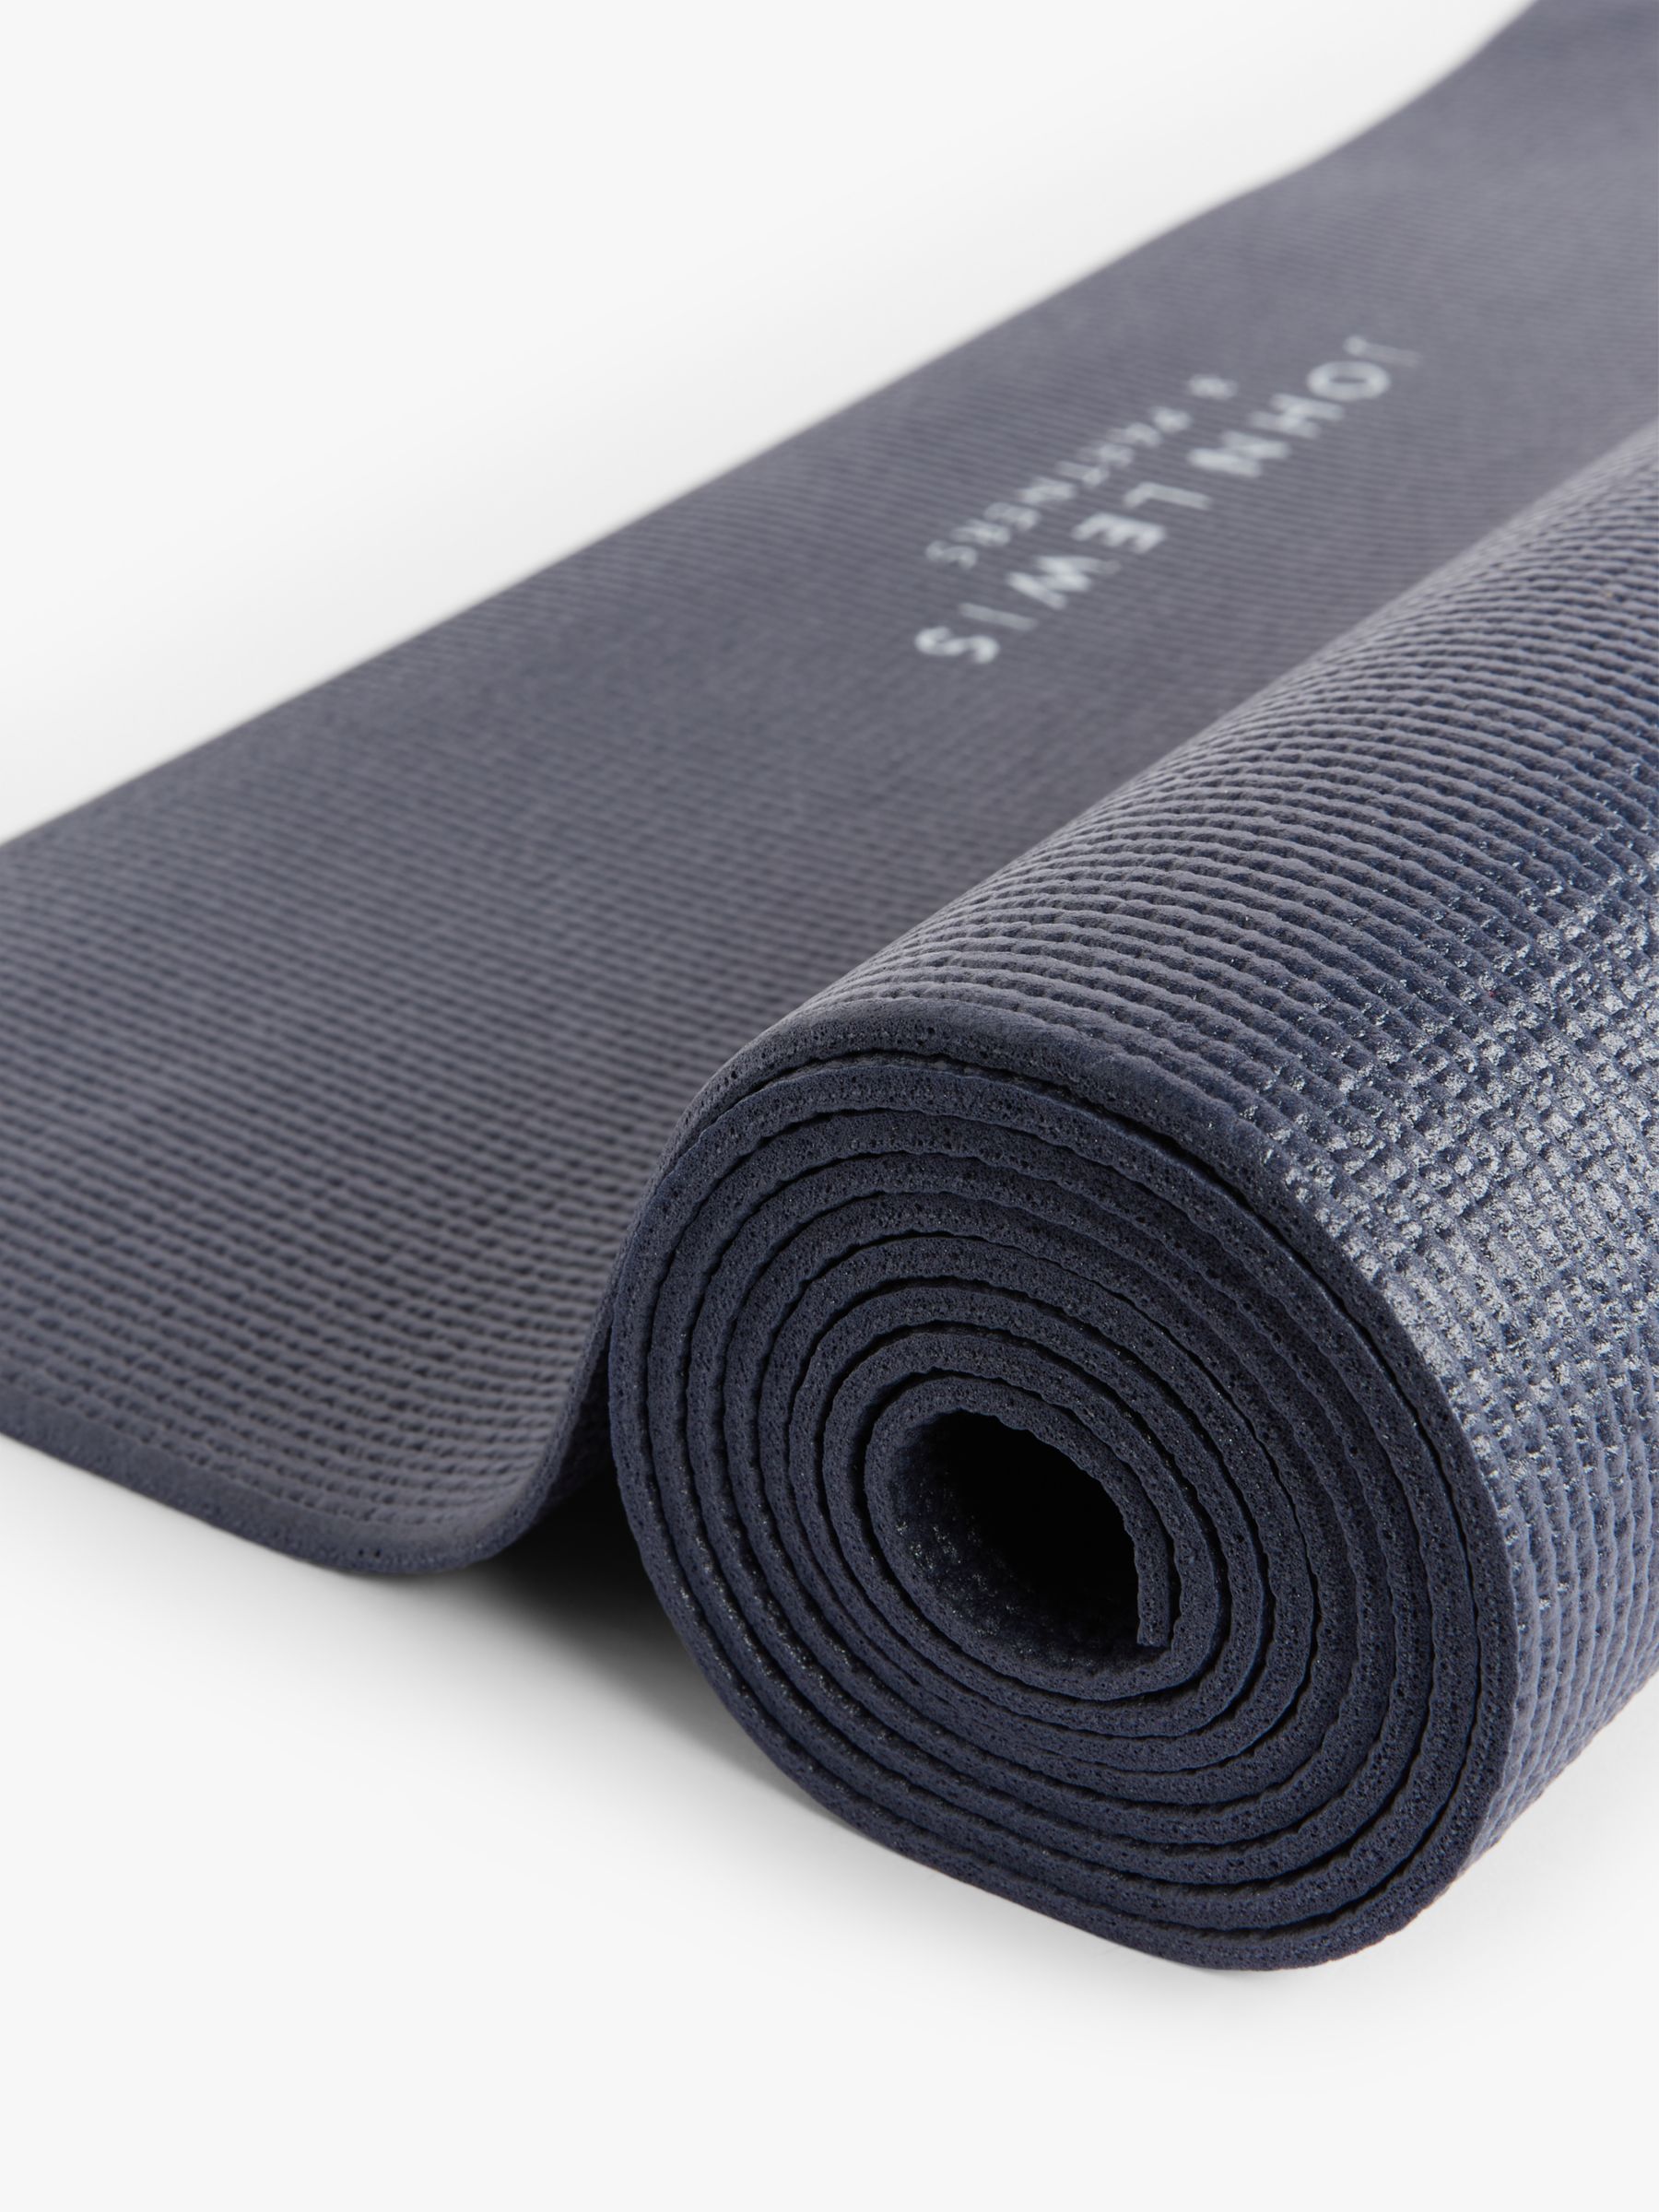 John Lewis Yoga Starter Kit